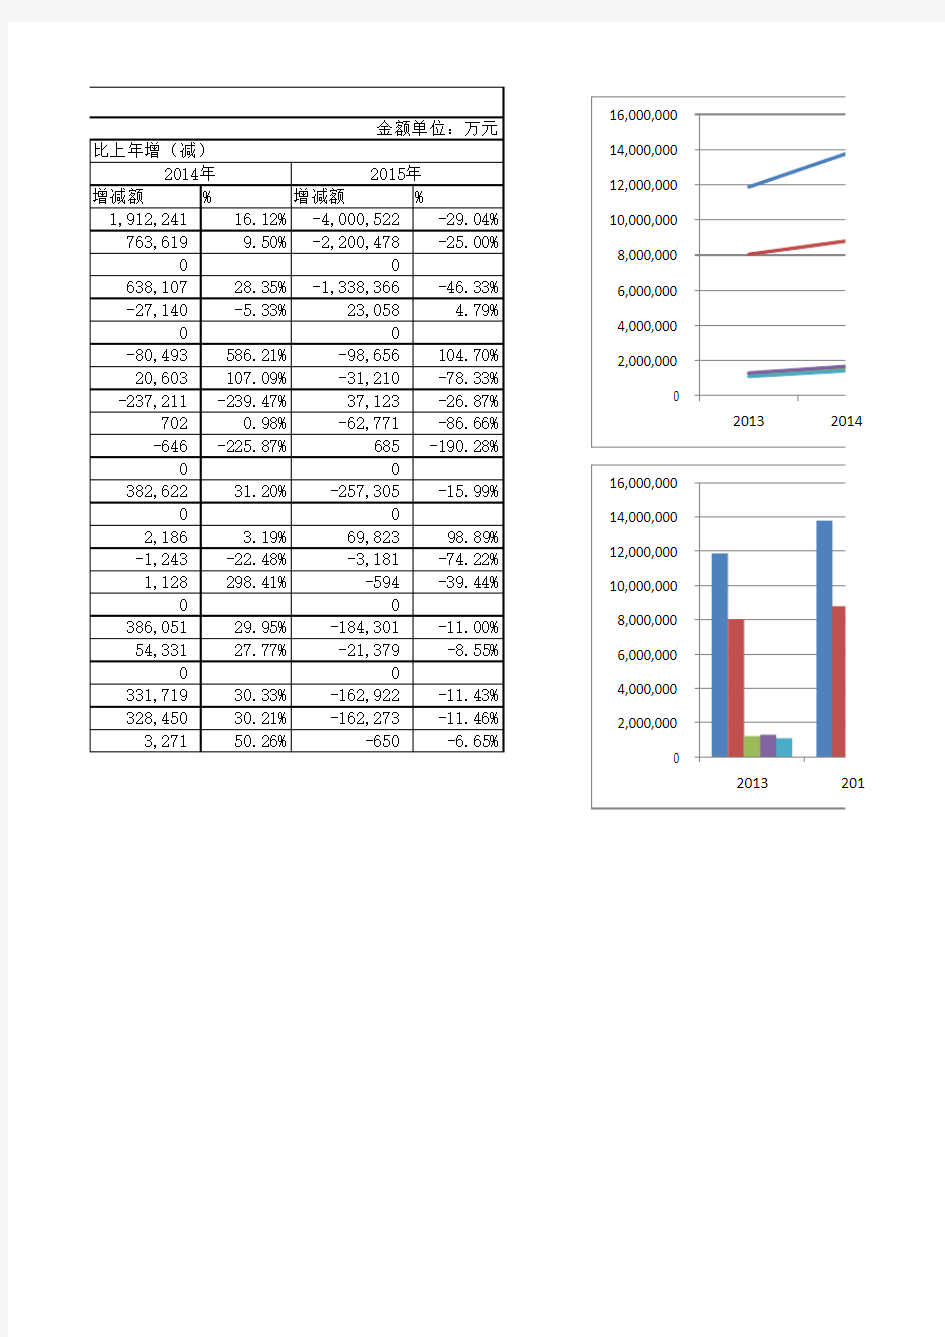 格力电器2013-2015年利润表分析